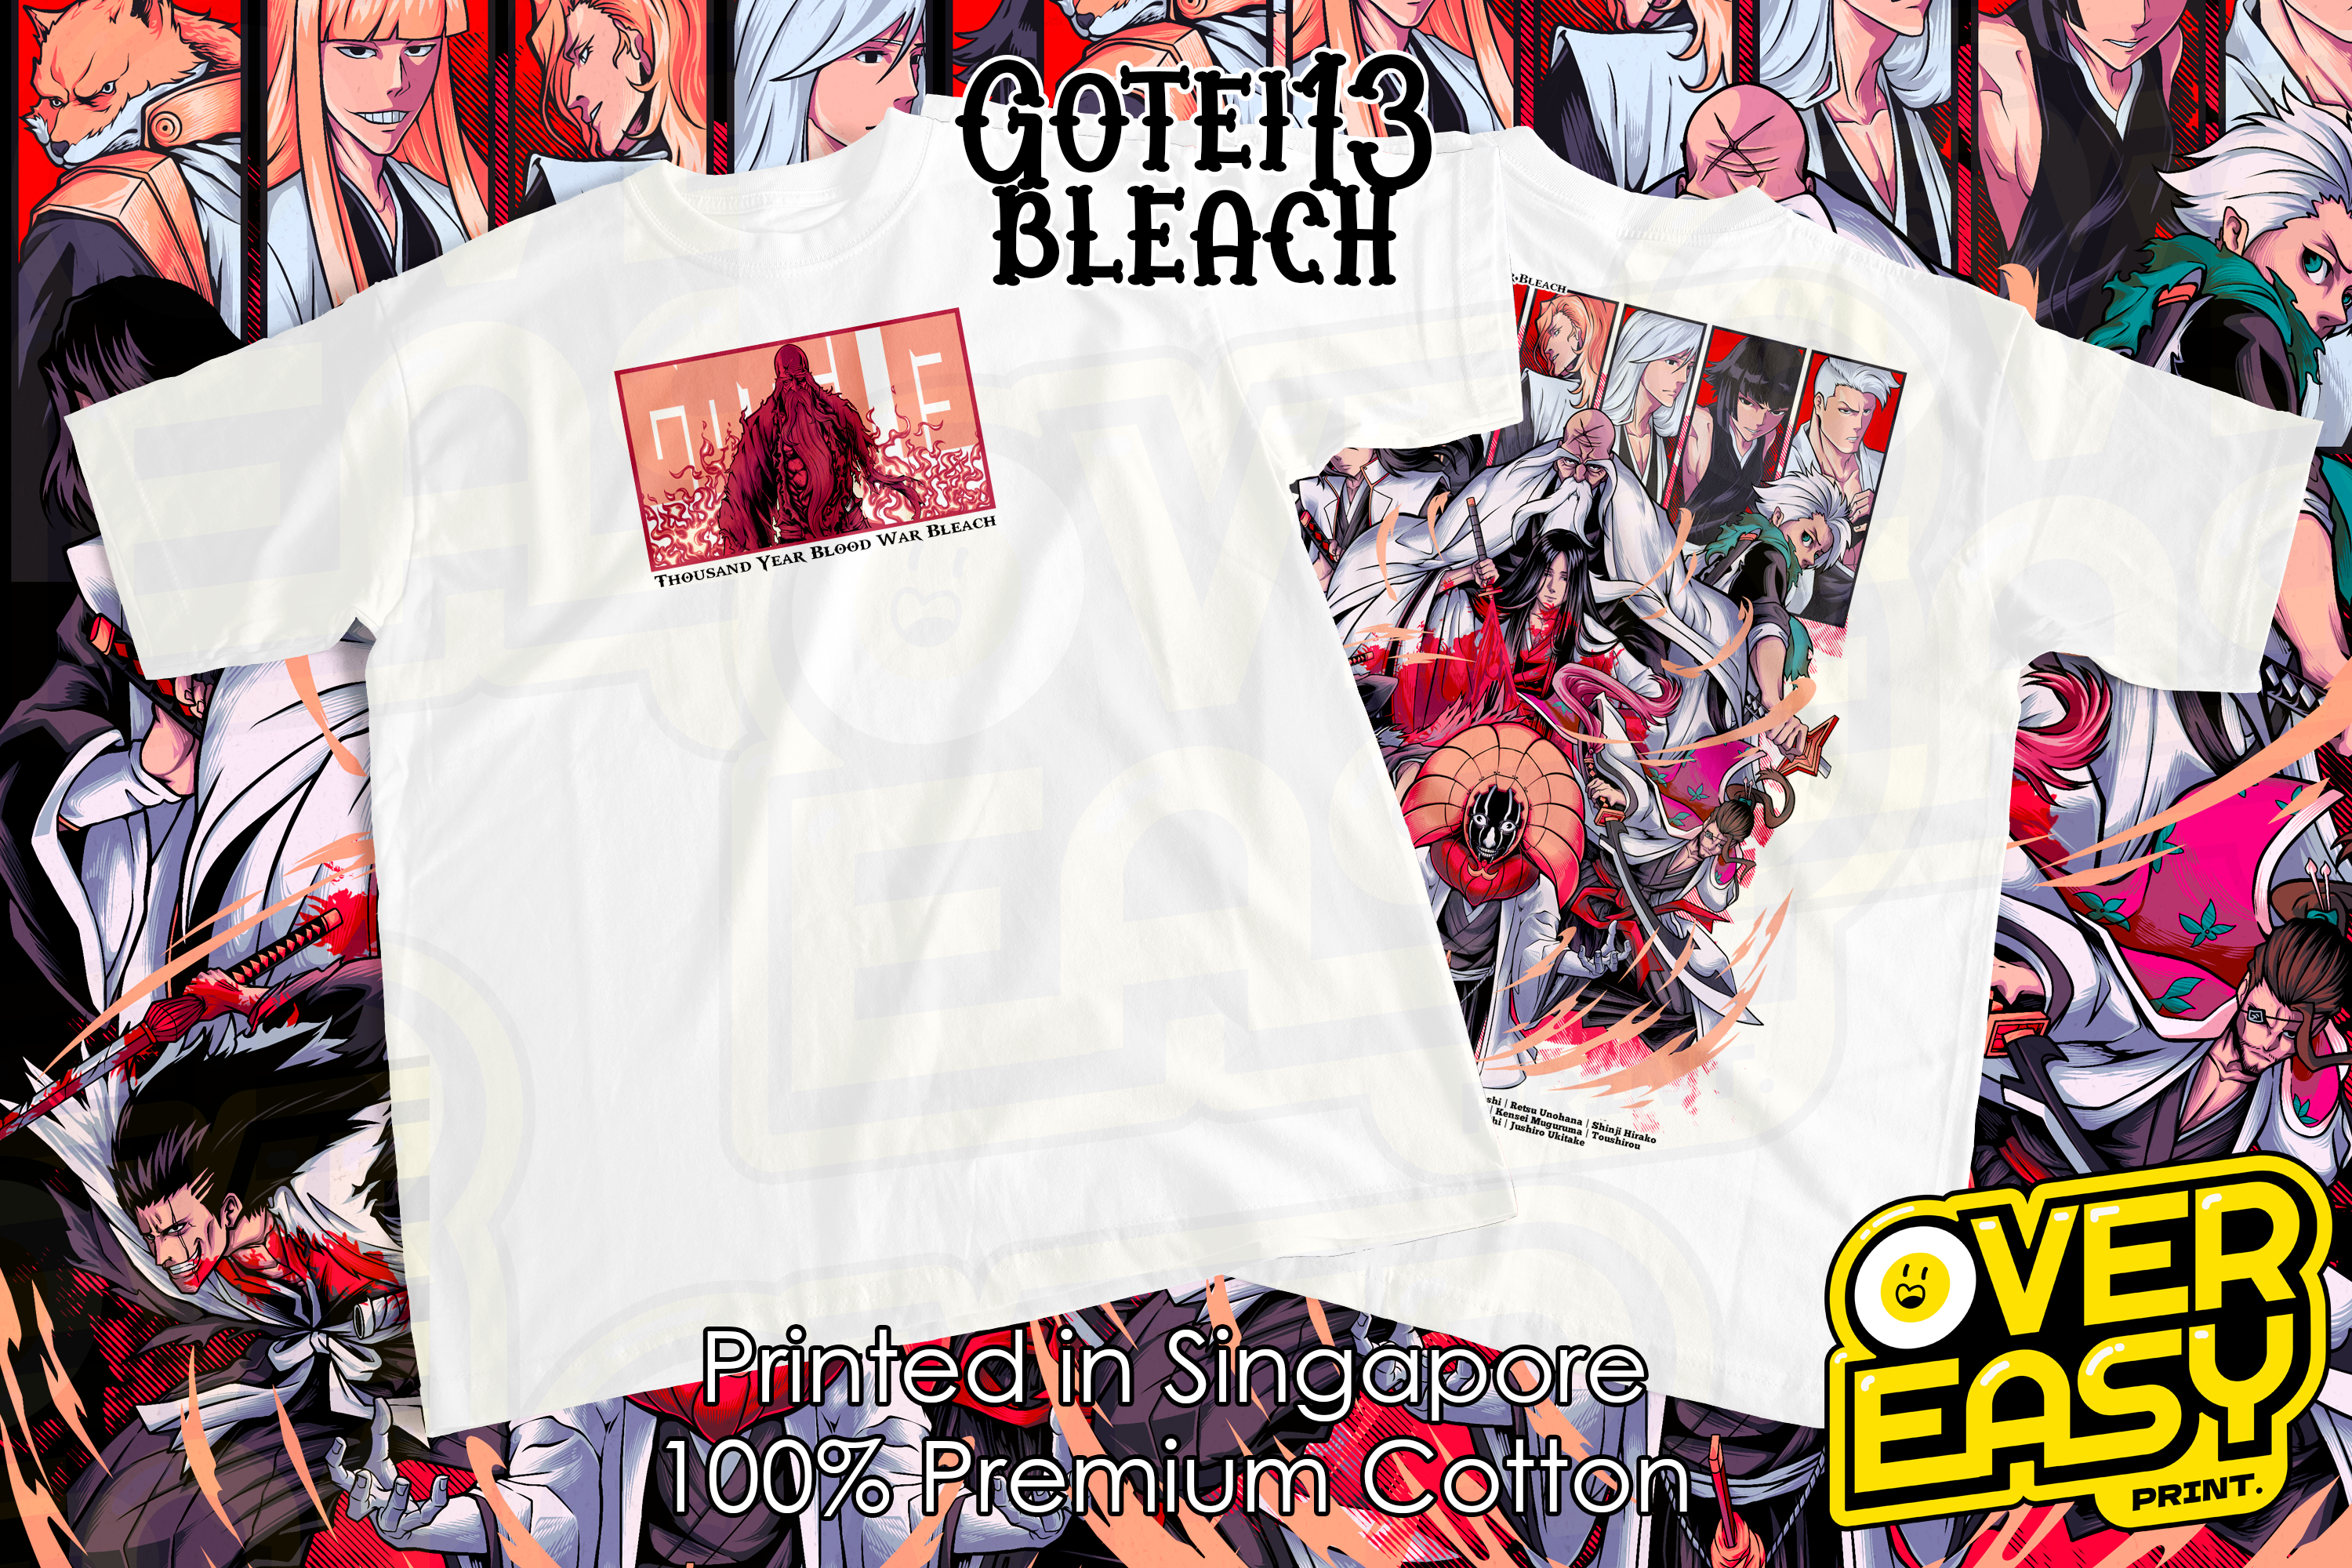 Gotei13 Captain Bleach Fanart T-Shirt